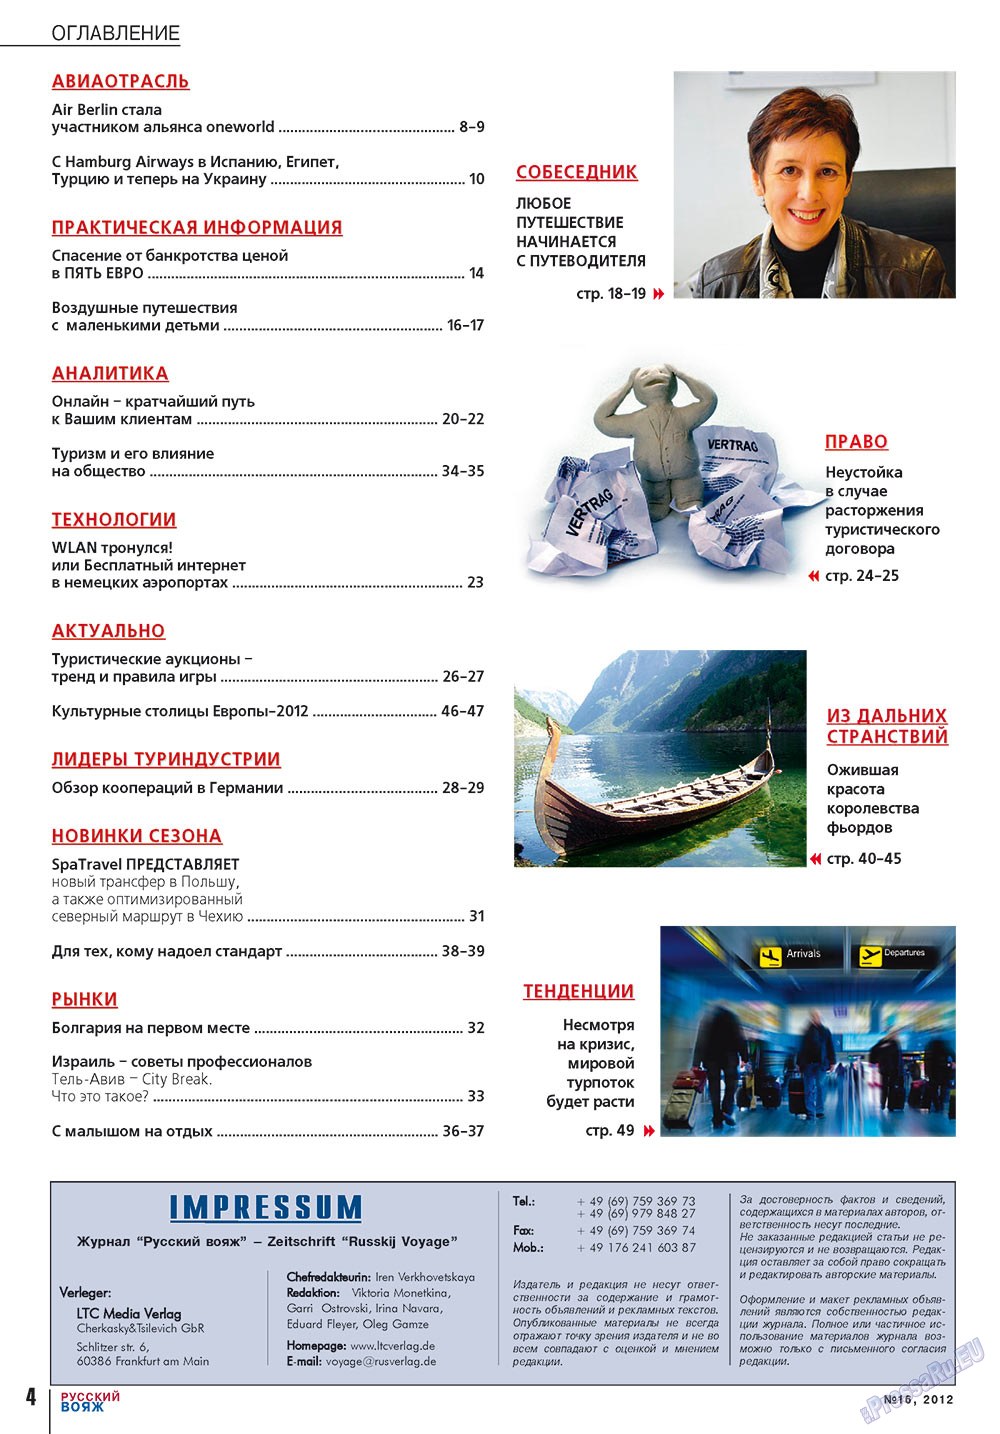 Русский вояж (журнал). 2012 год, номер 16, стр. 4